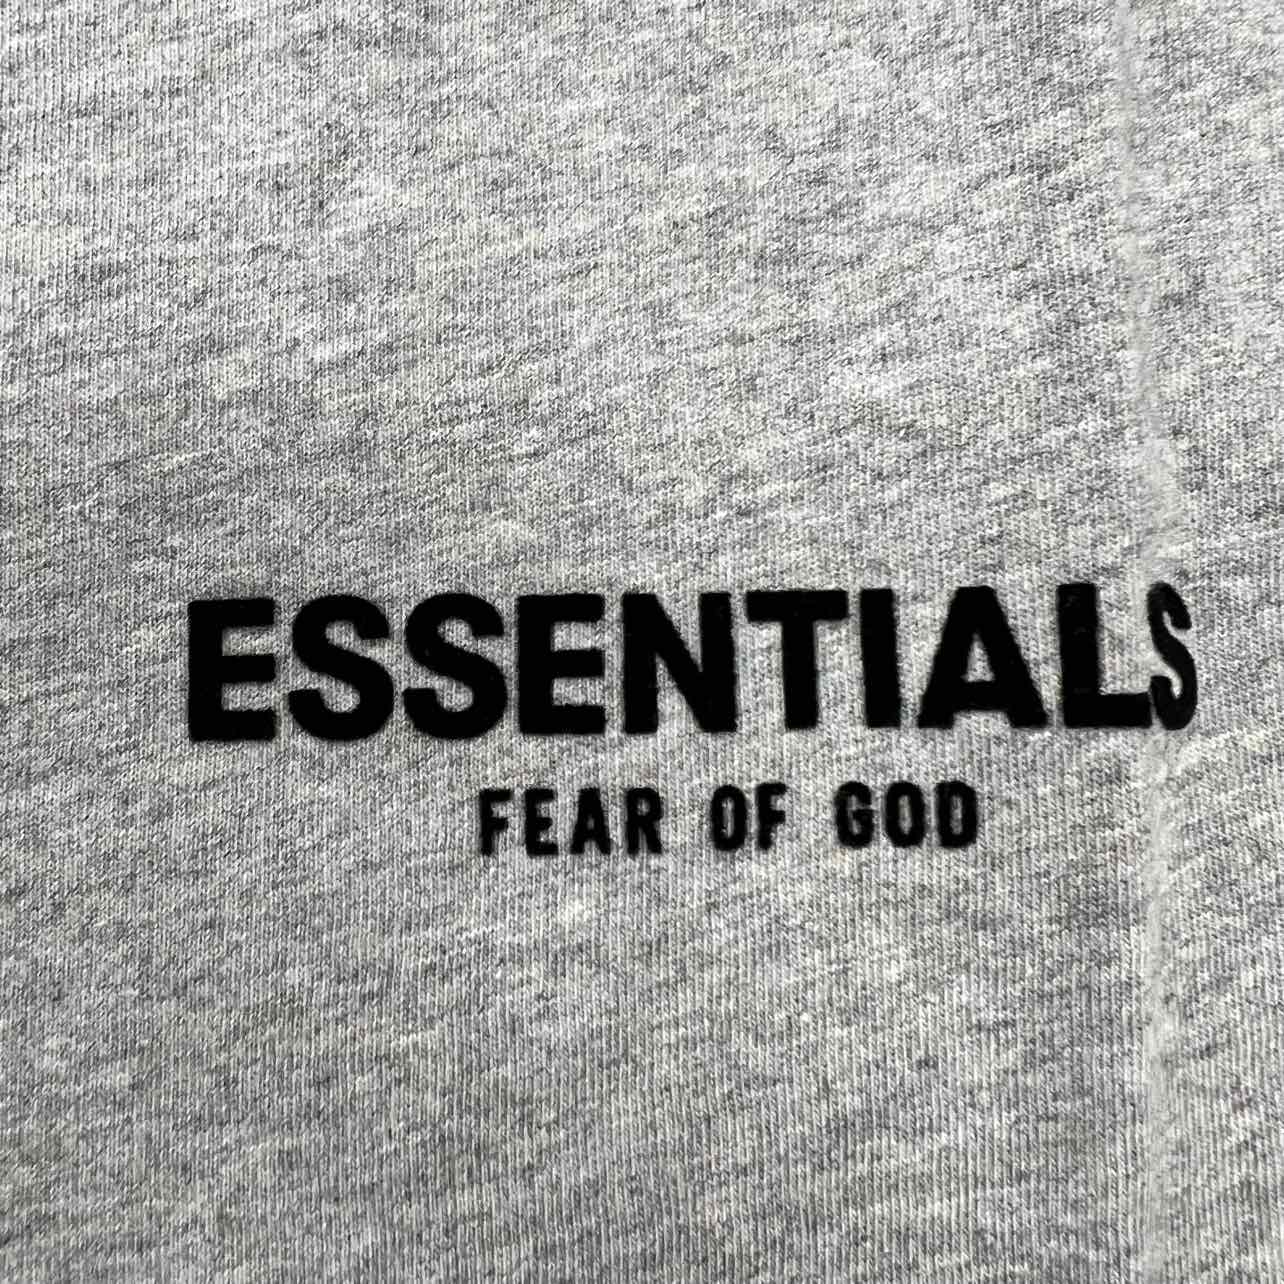 Fear of God T-Shirt &quot;ESSENTIALS&quot; Dark Oatmeal New Size XL